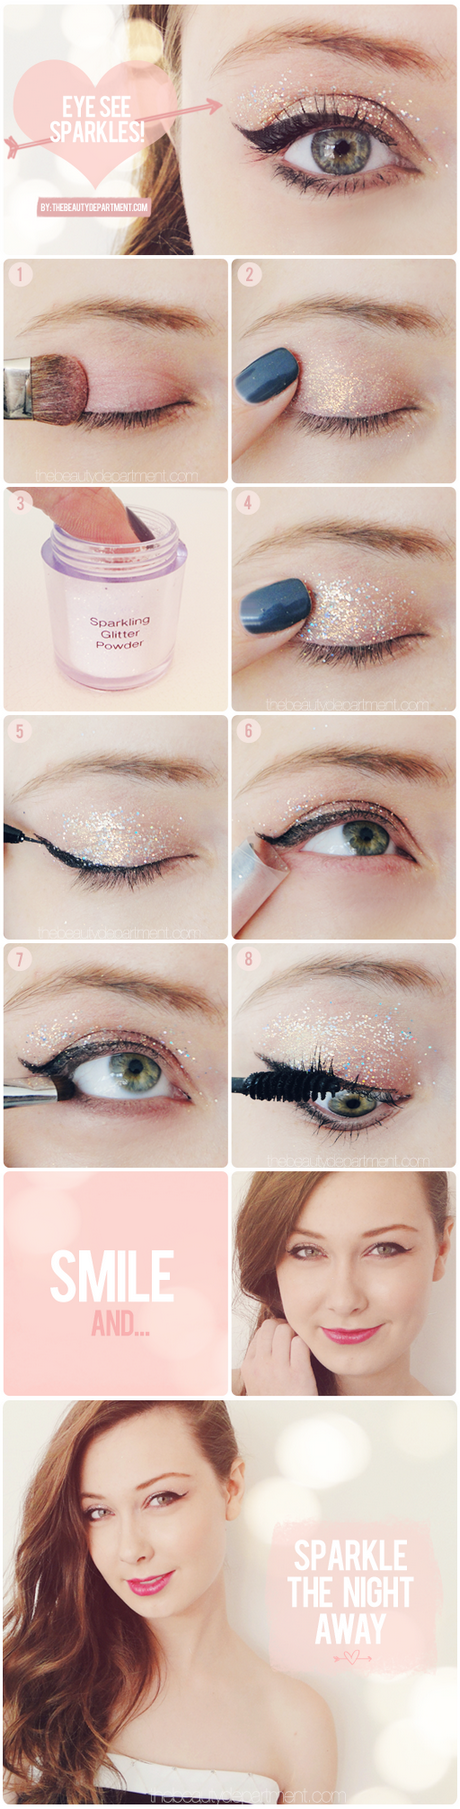 makeup-tips-for-party-26 Make-up tips voor een feestje